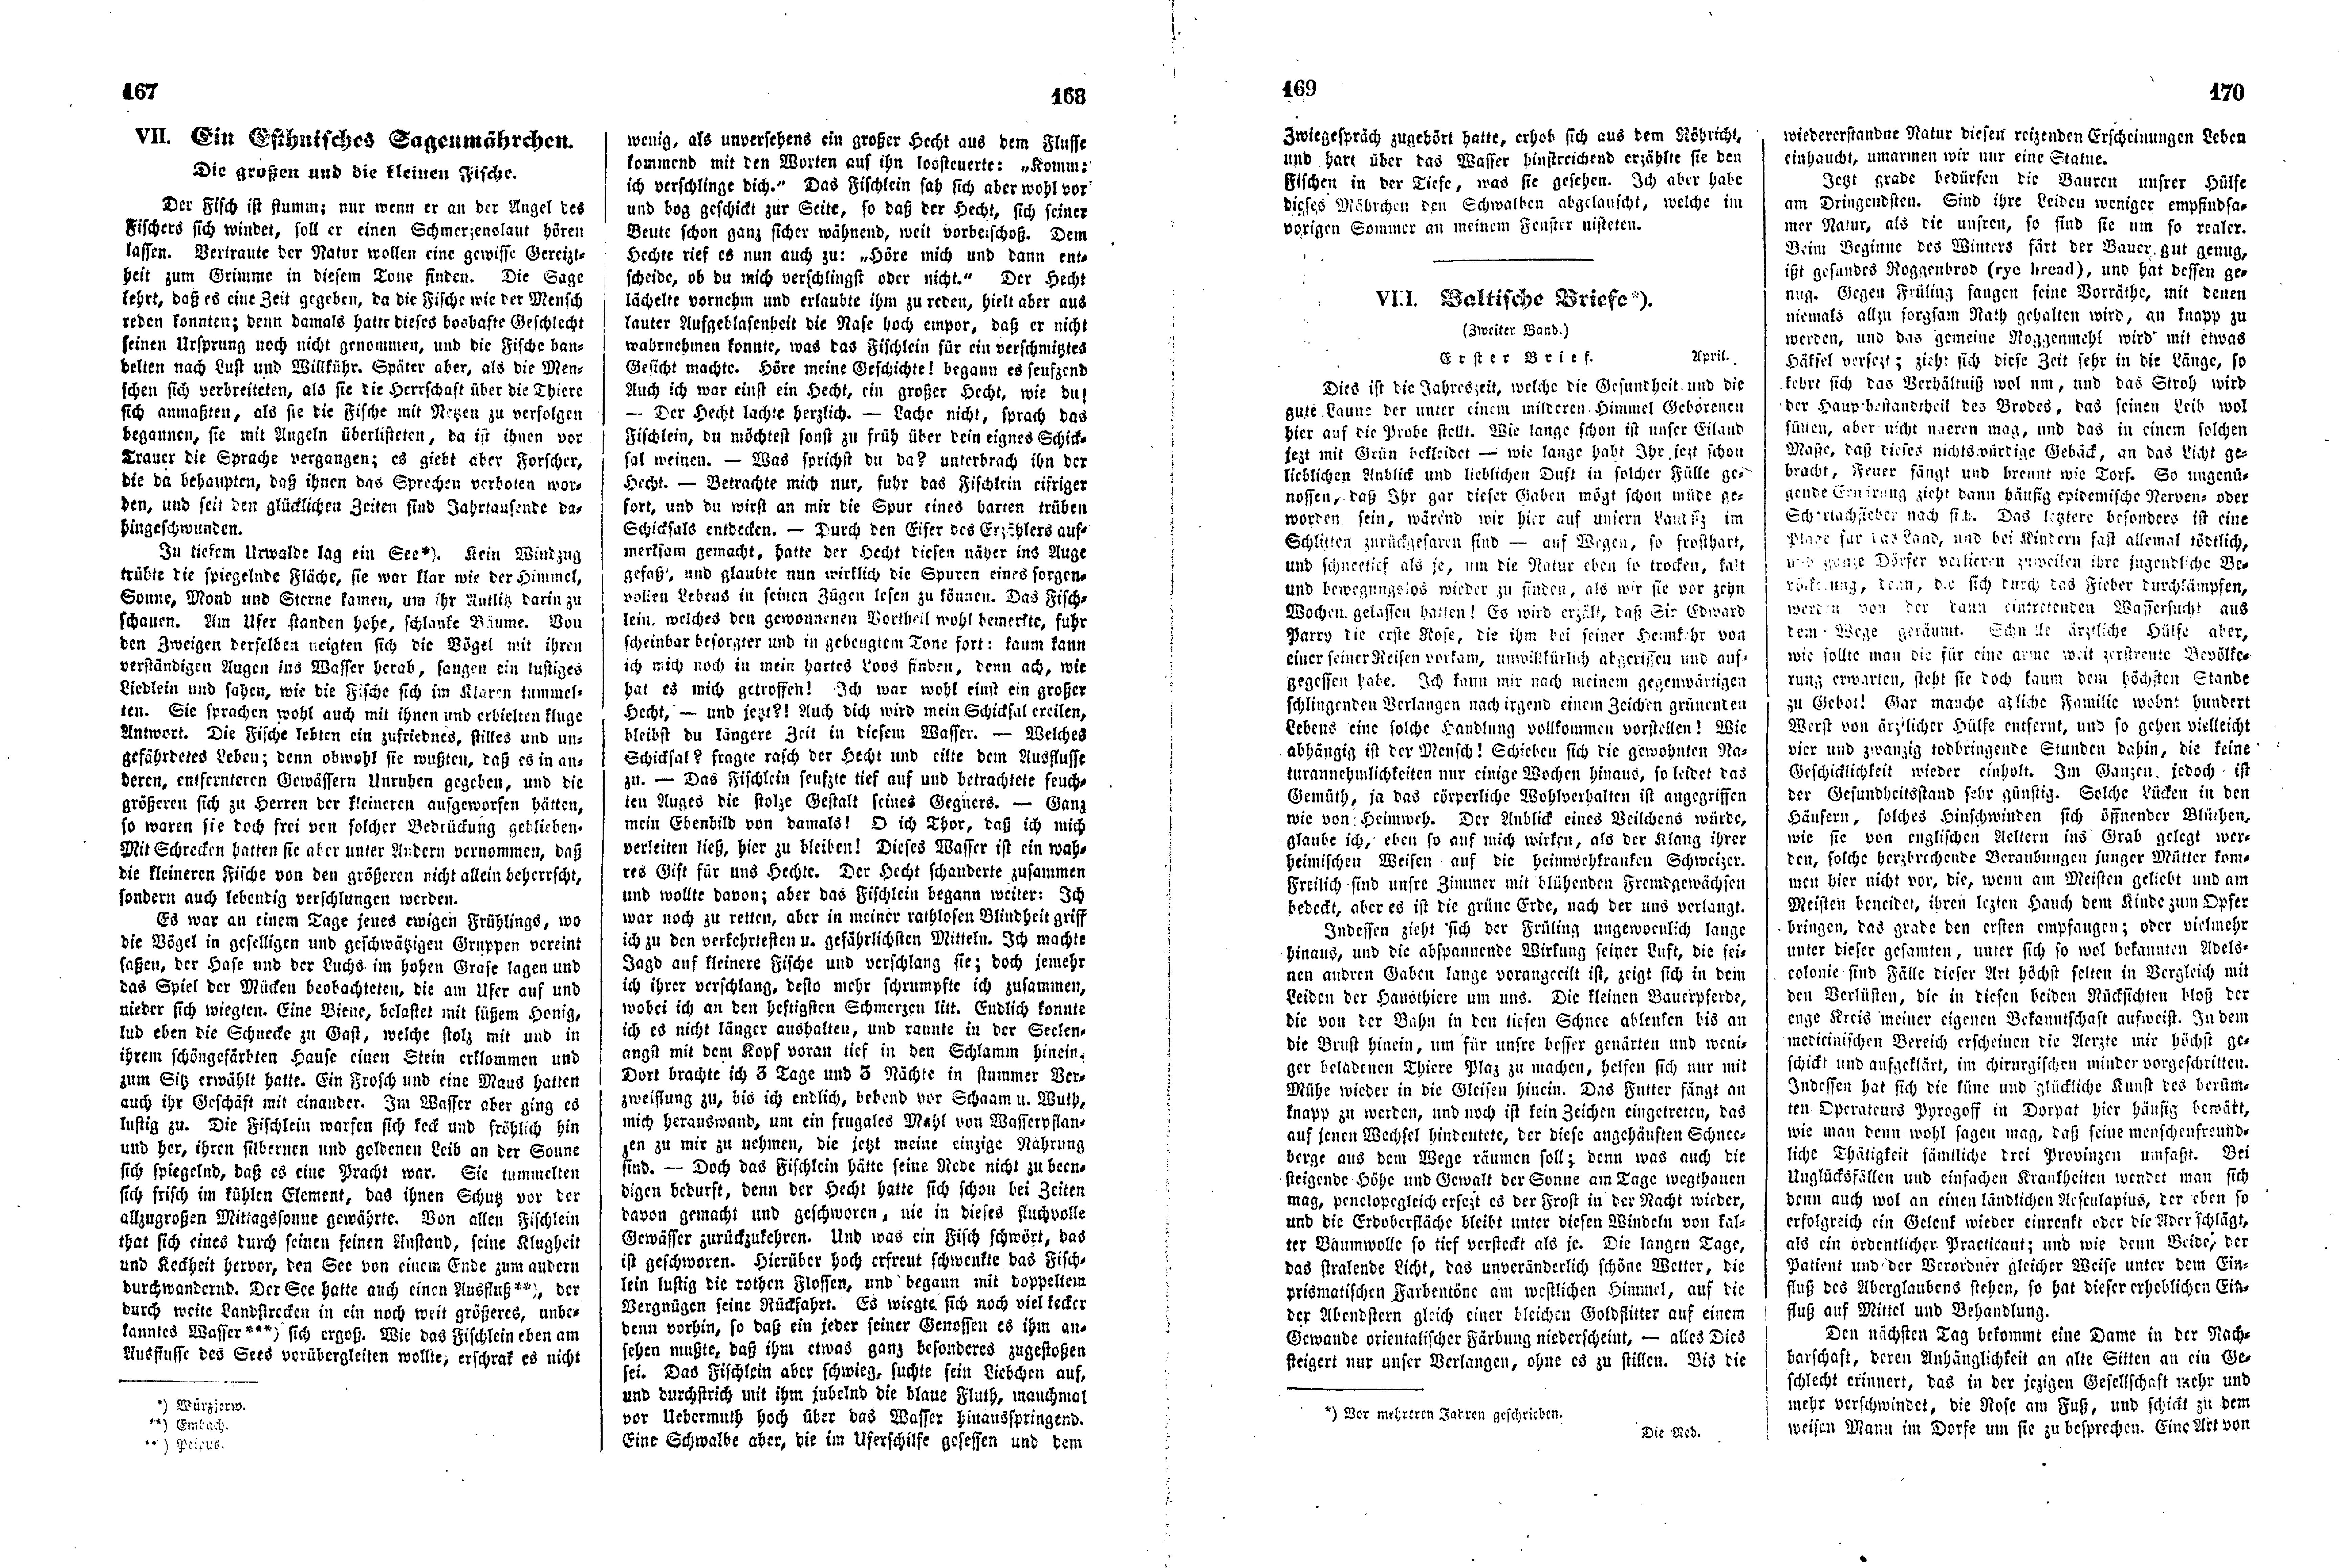 Das Inland [11] (1846) | 47. (167-170) Põhitekst